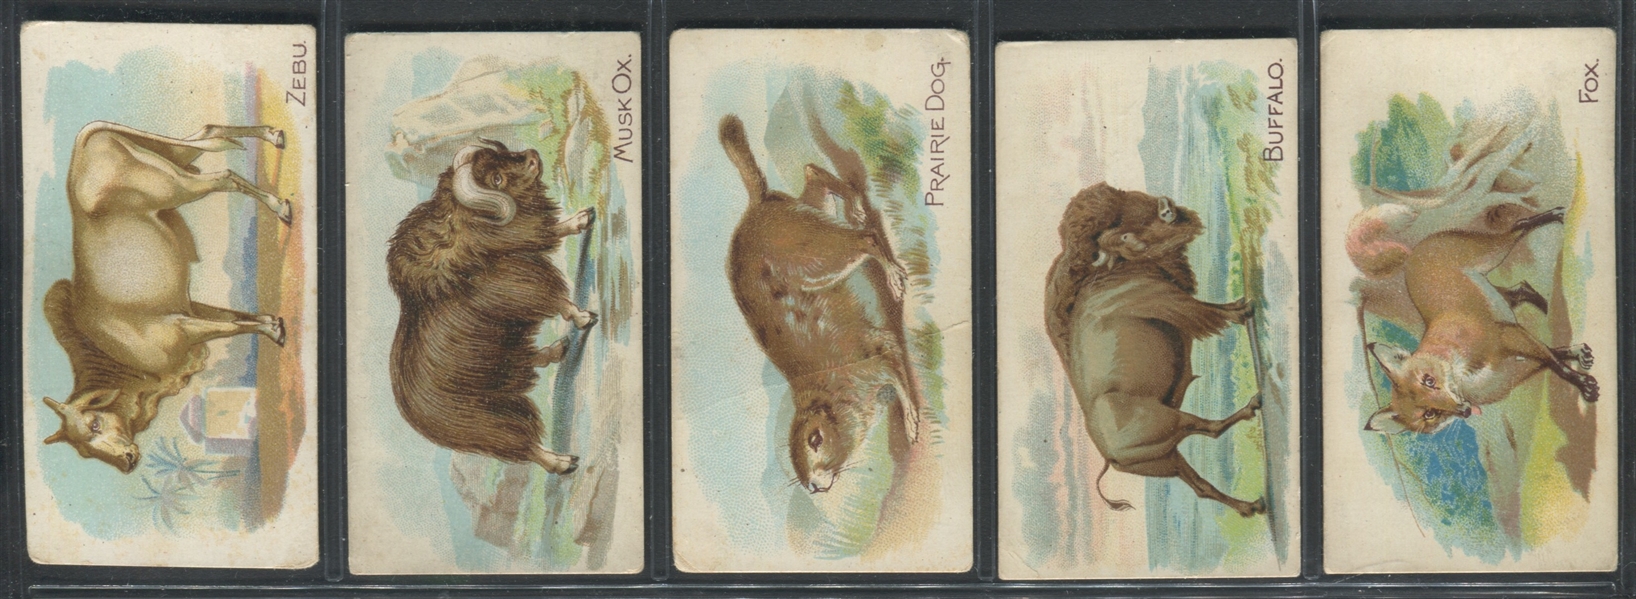 E28 Philadelphia Confections Zoo Cards (Quadrupeds) Lot of (20) Cards